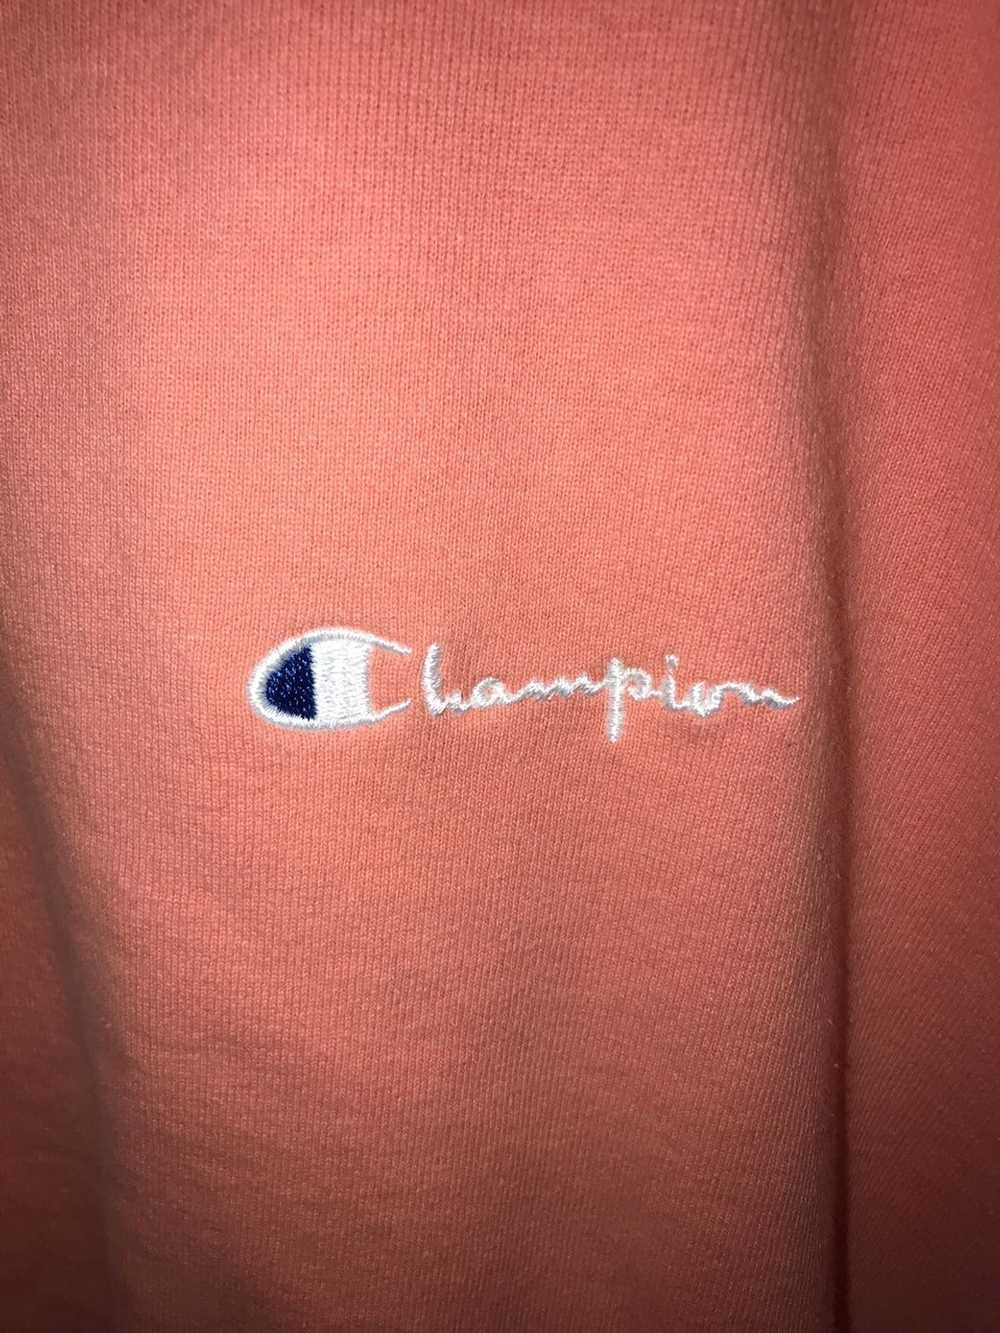 Champion × Vintage Vintage Peach Color 90’s Champ… - image 3